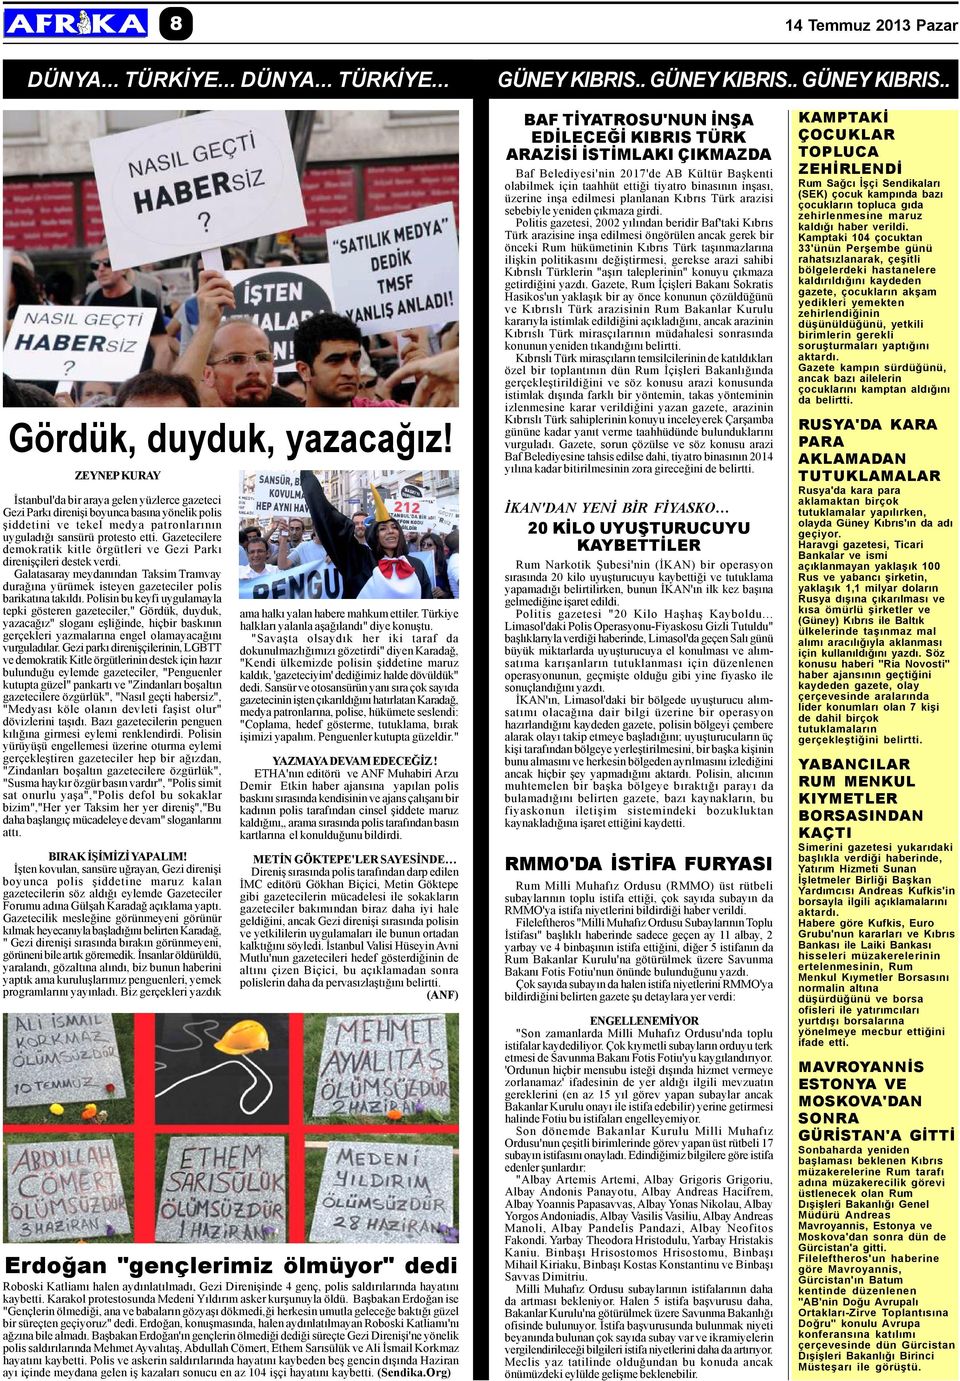 Gazetecilere demokratik kitle örgütleri ve Gezi Parký direniþçileri destek verdi. Galatasaray meydanýndan Taksim Tramvay duraðýna yürümek isteyen gazeteciler polis barikatýna takýldý.